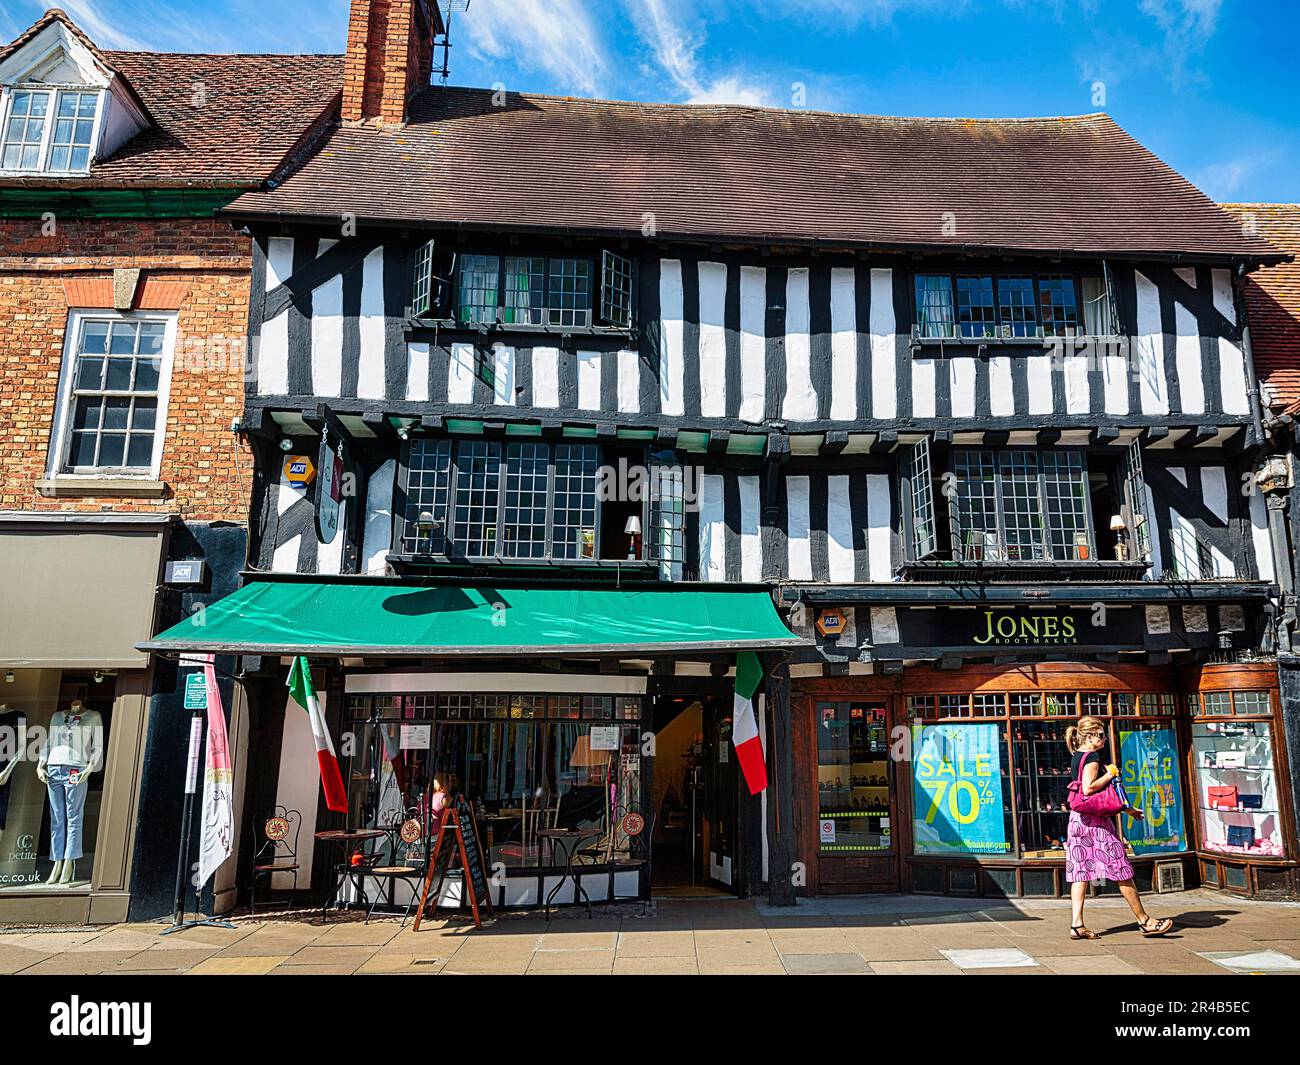 Maison à colombages avec boutiques, piéton, Stratford-upon-Avon, Warwickshire, Angleterre, Royaume-Uni Banque D'Images